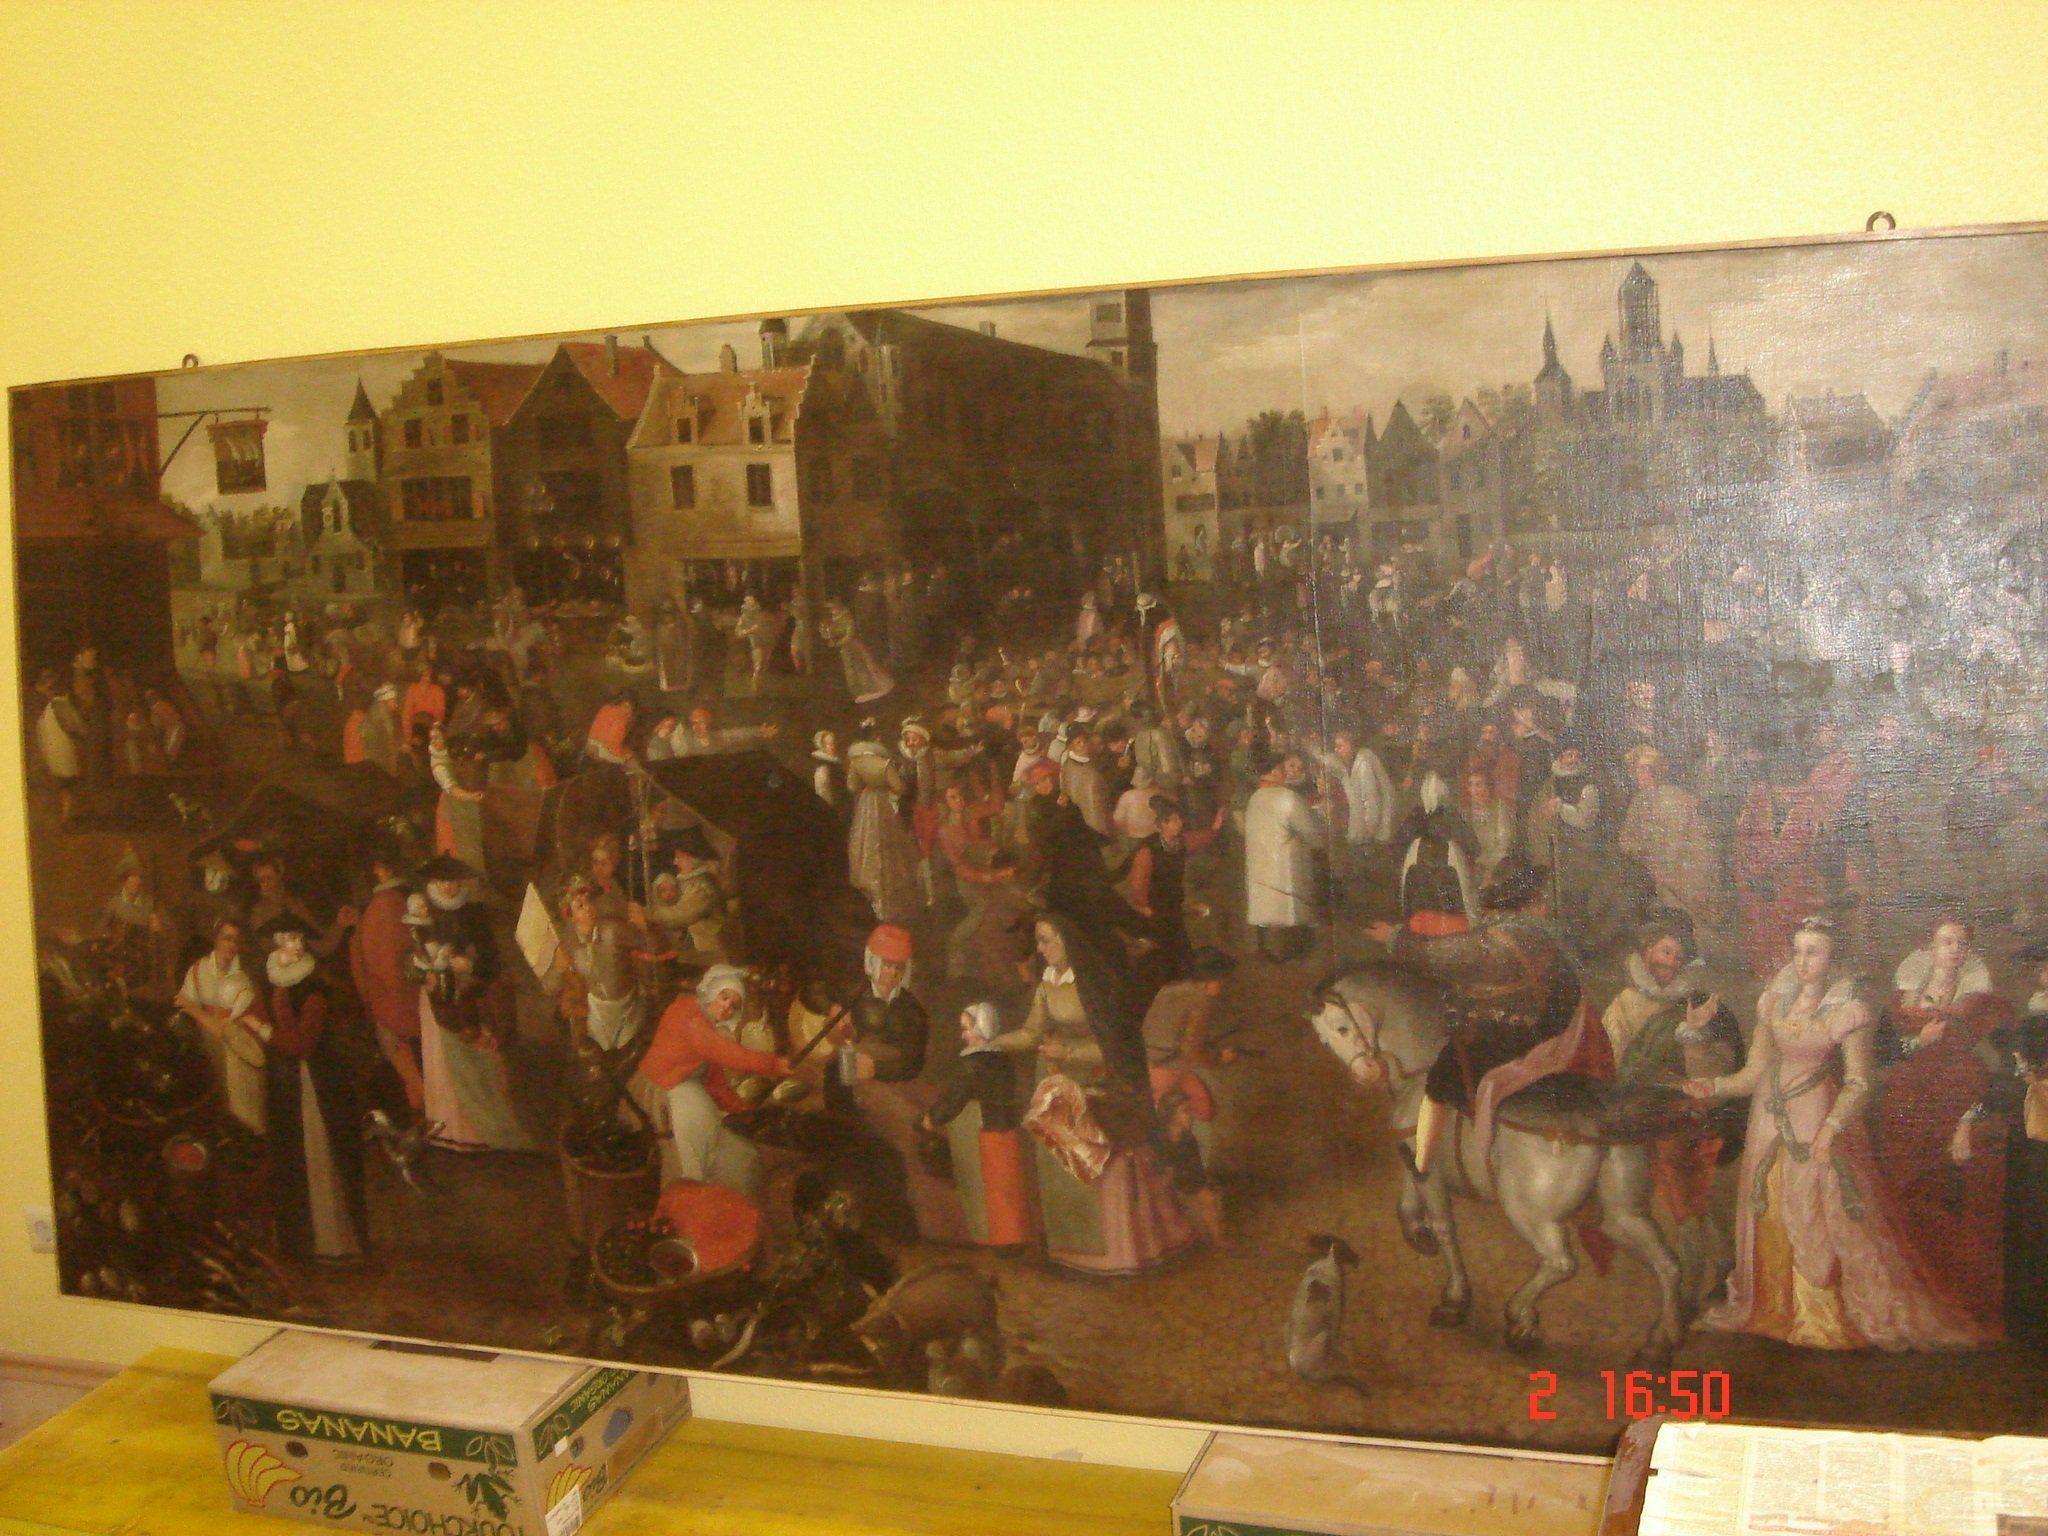 Ein Schüler des berühmten Malers Pieter Brueghel malte dieses Riesenbild.